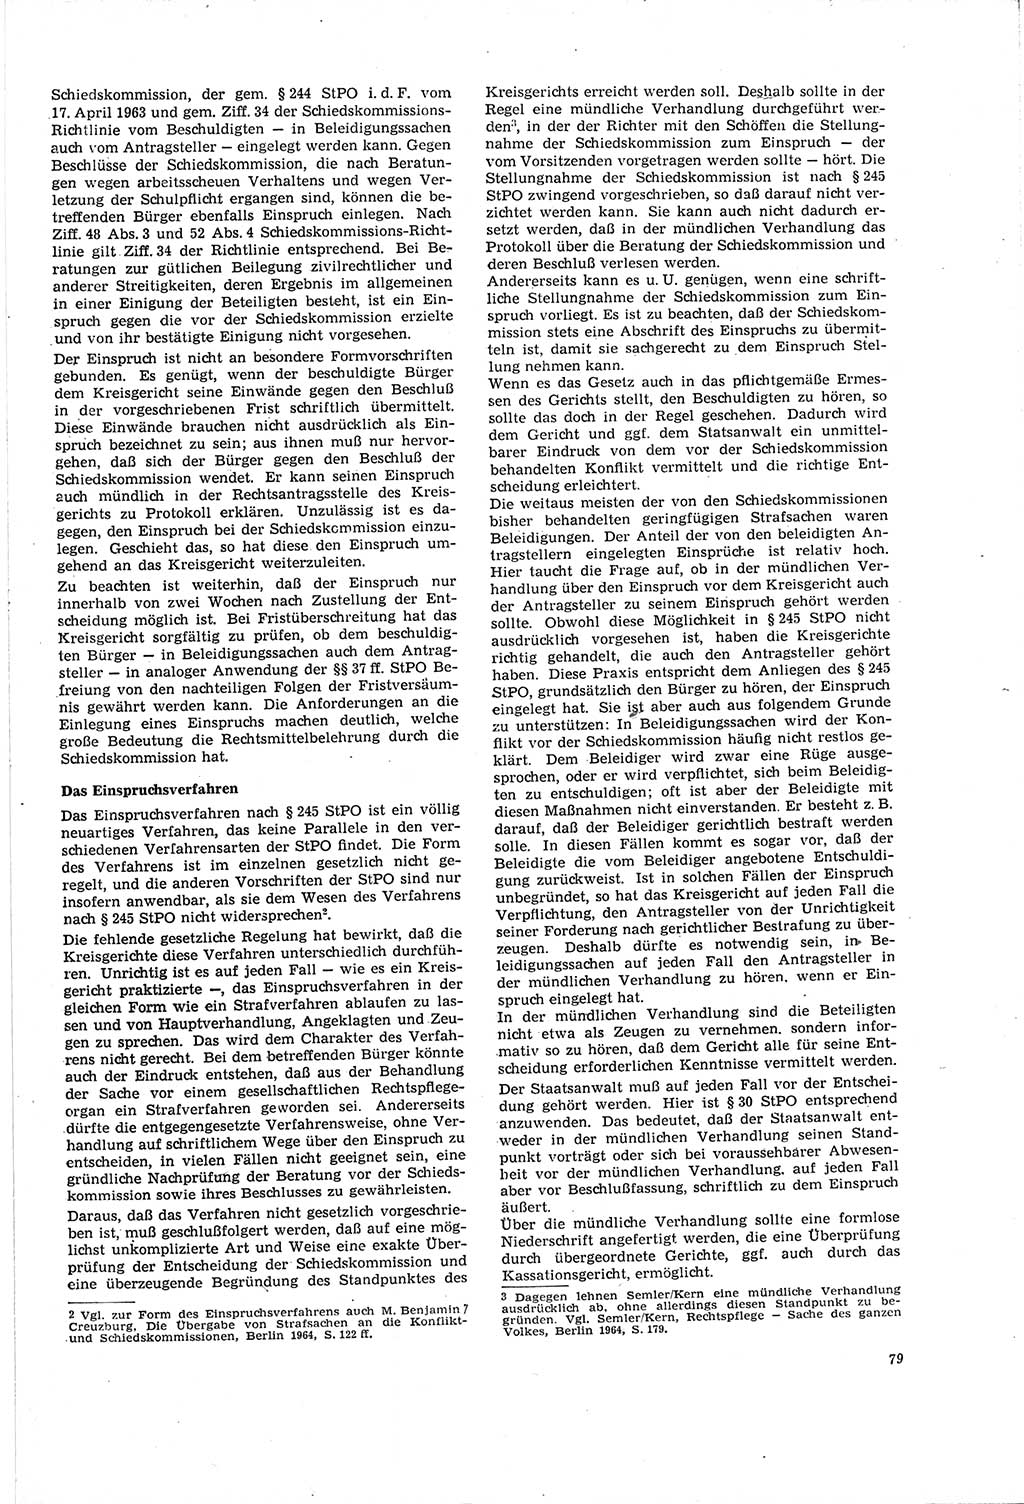 Neue Justiz (NJ), Zeitschrift für Recht und Rechtswissenschaft [Deutsche Demokratische Republik (DDR)], 20. Jahrgang 1966, Seite 79 (NJ DDR 1966, S. 79)